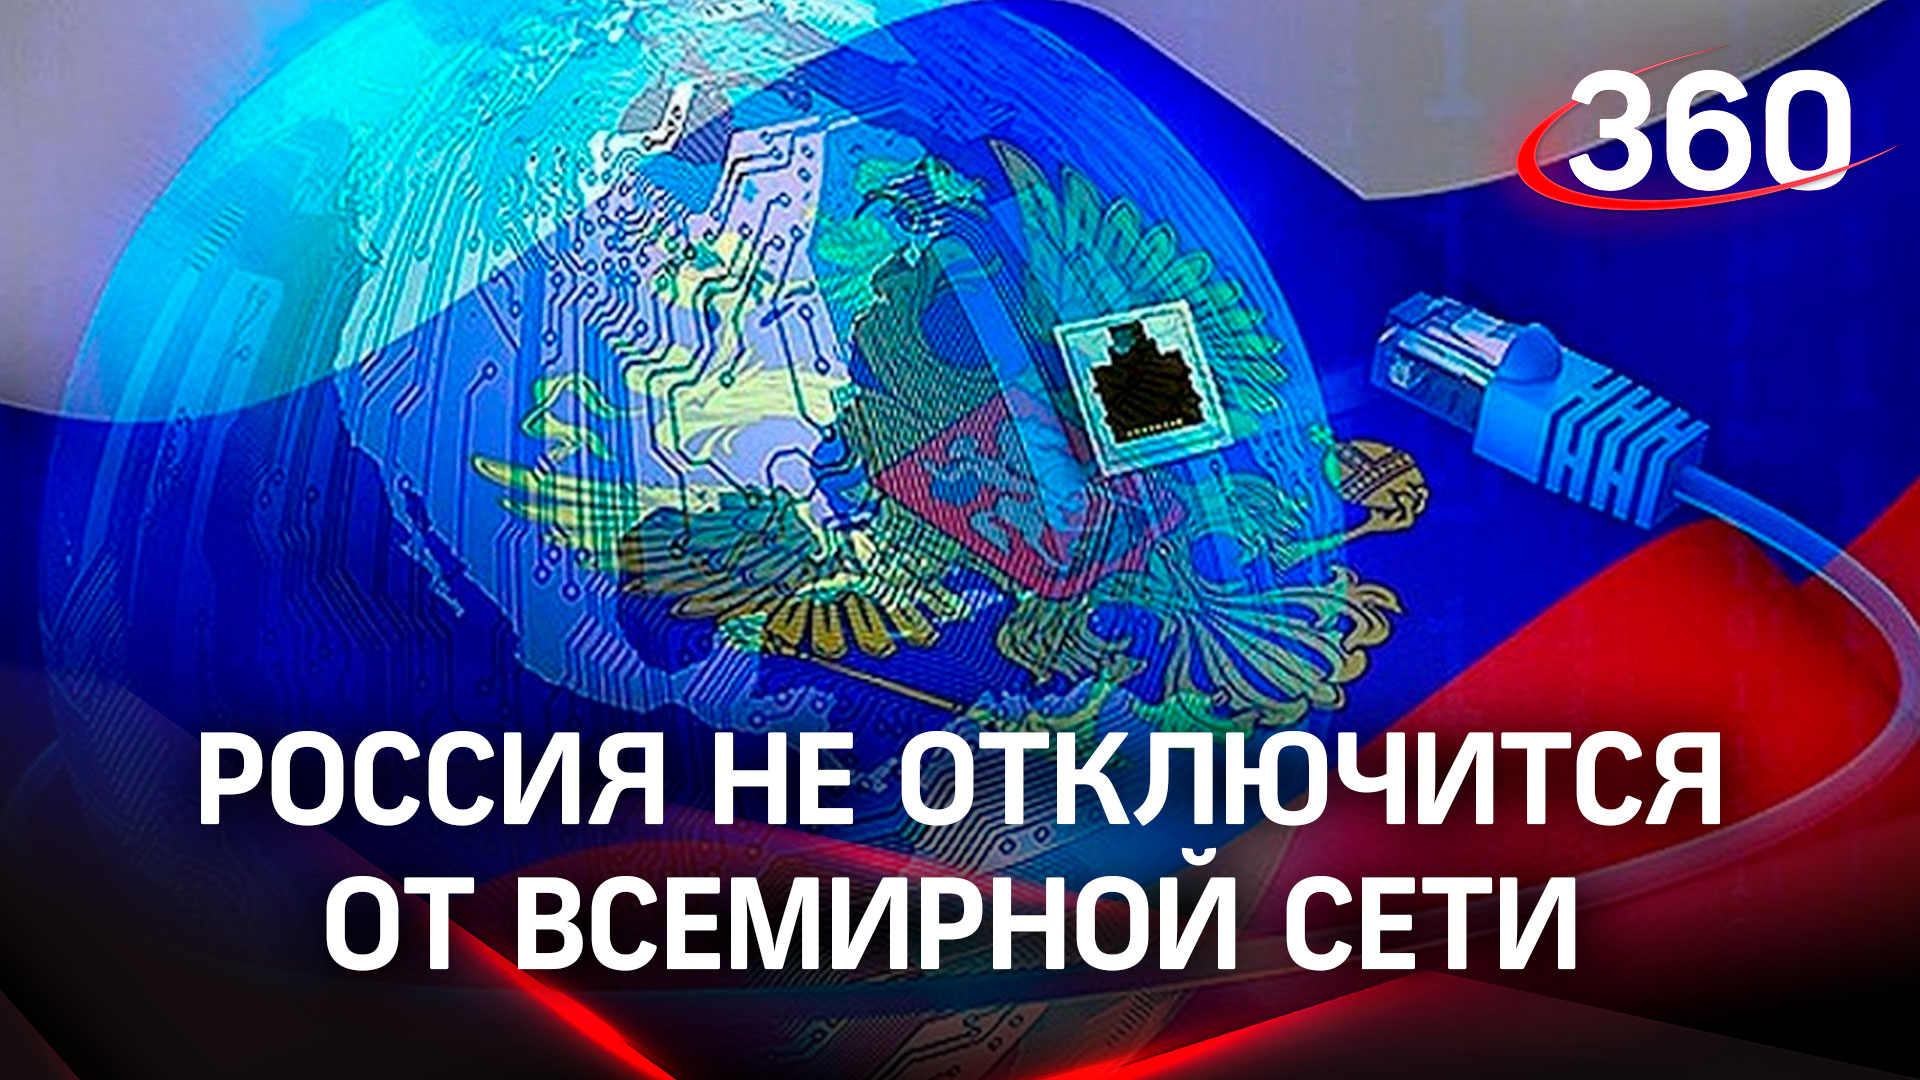 Изоляции не будет: Россия не останется без интернета, заверили в Кремле